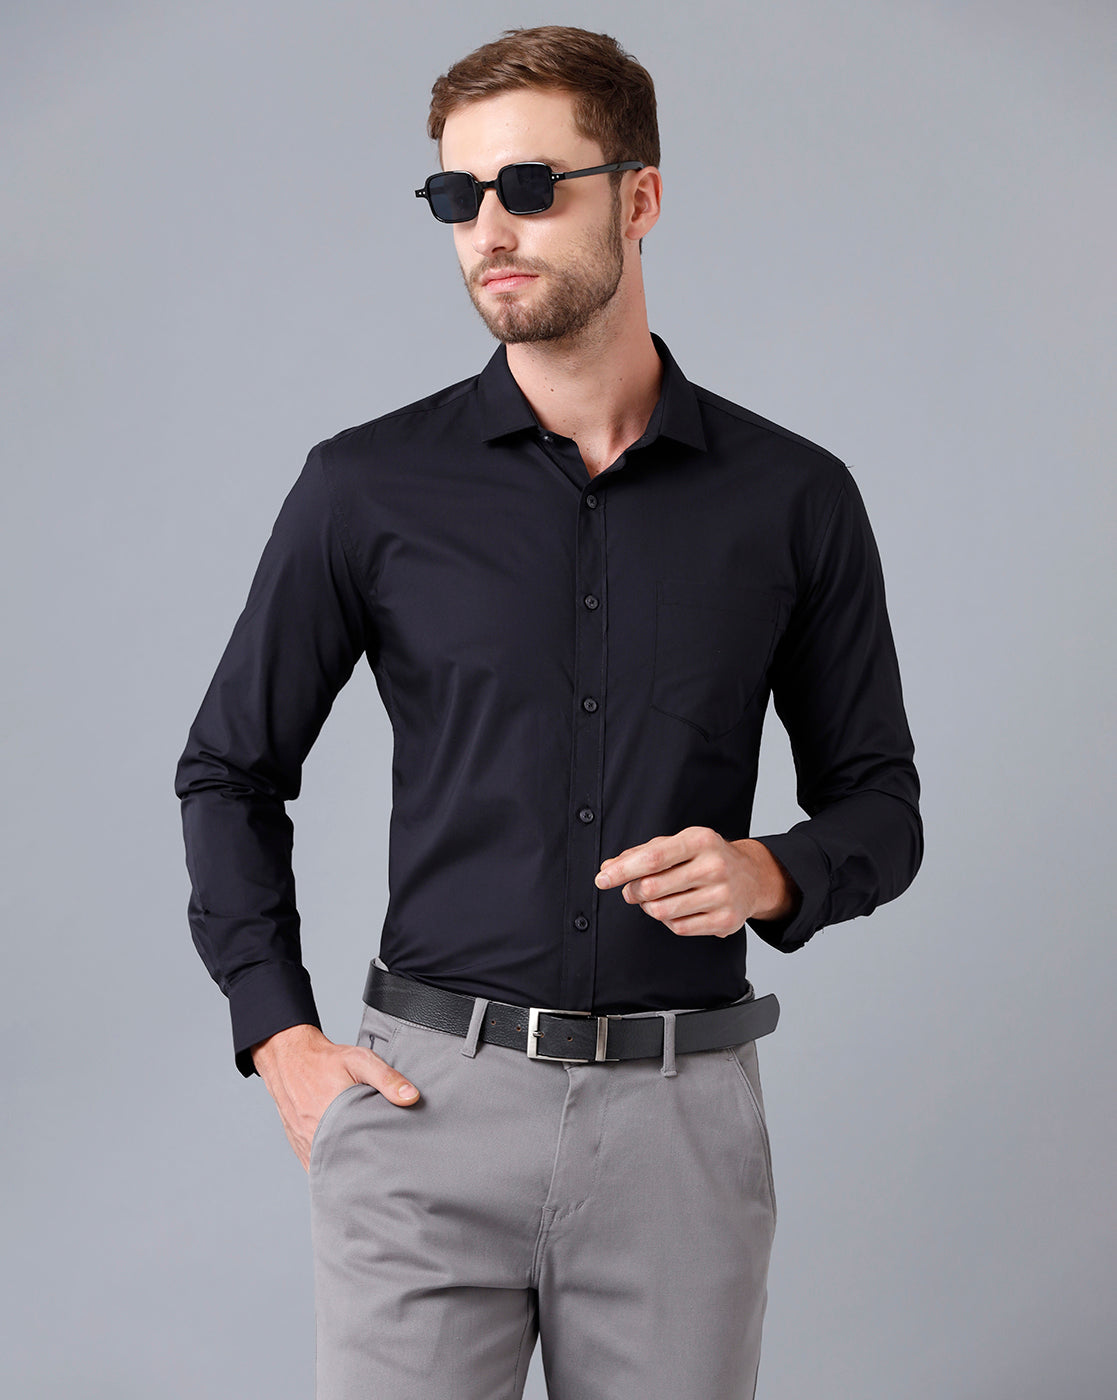 Men Solid Formal Black Shirt